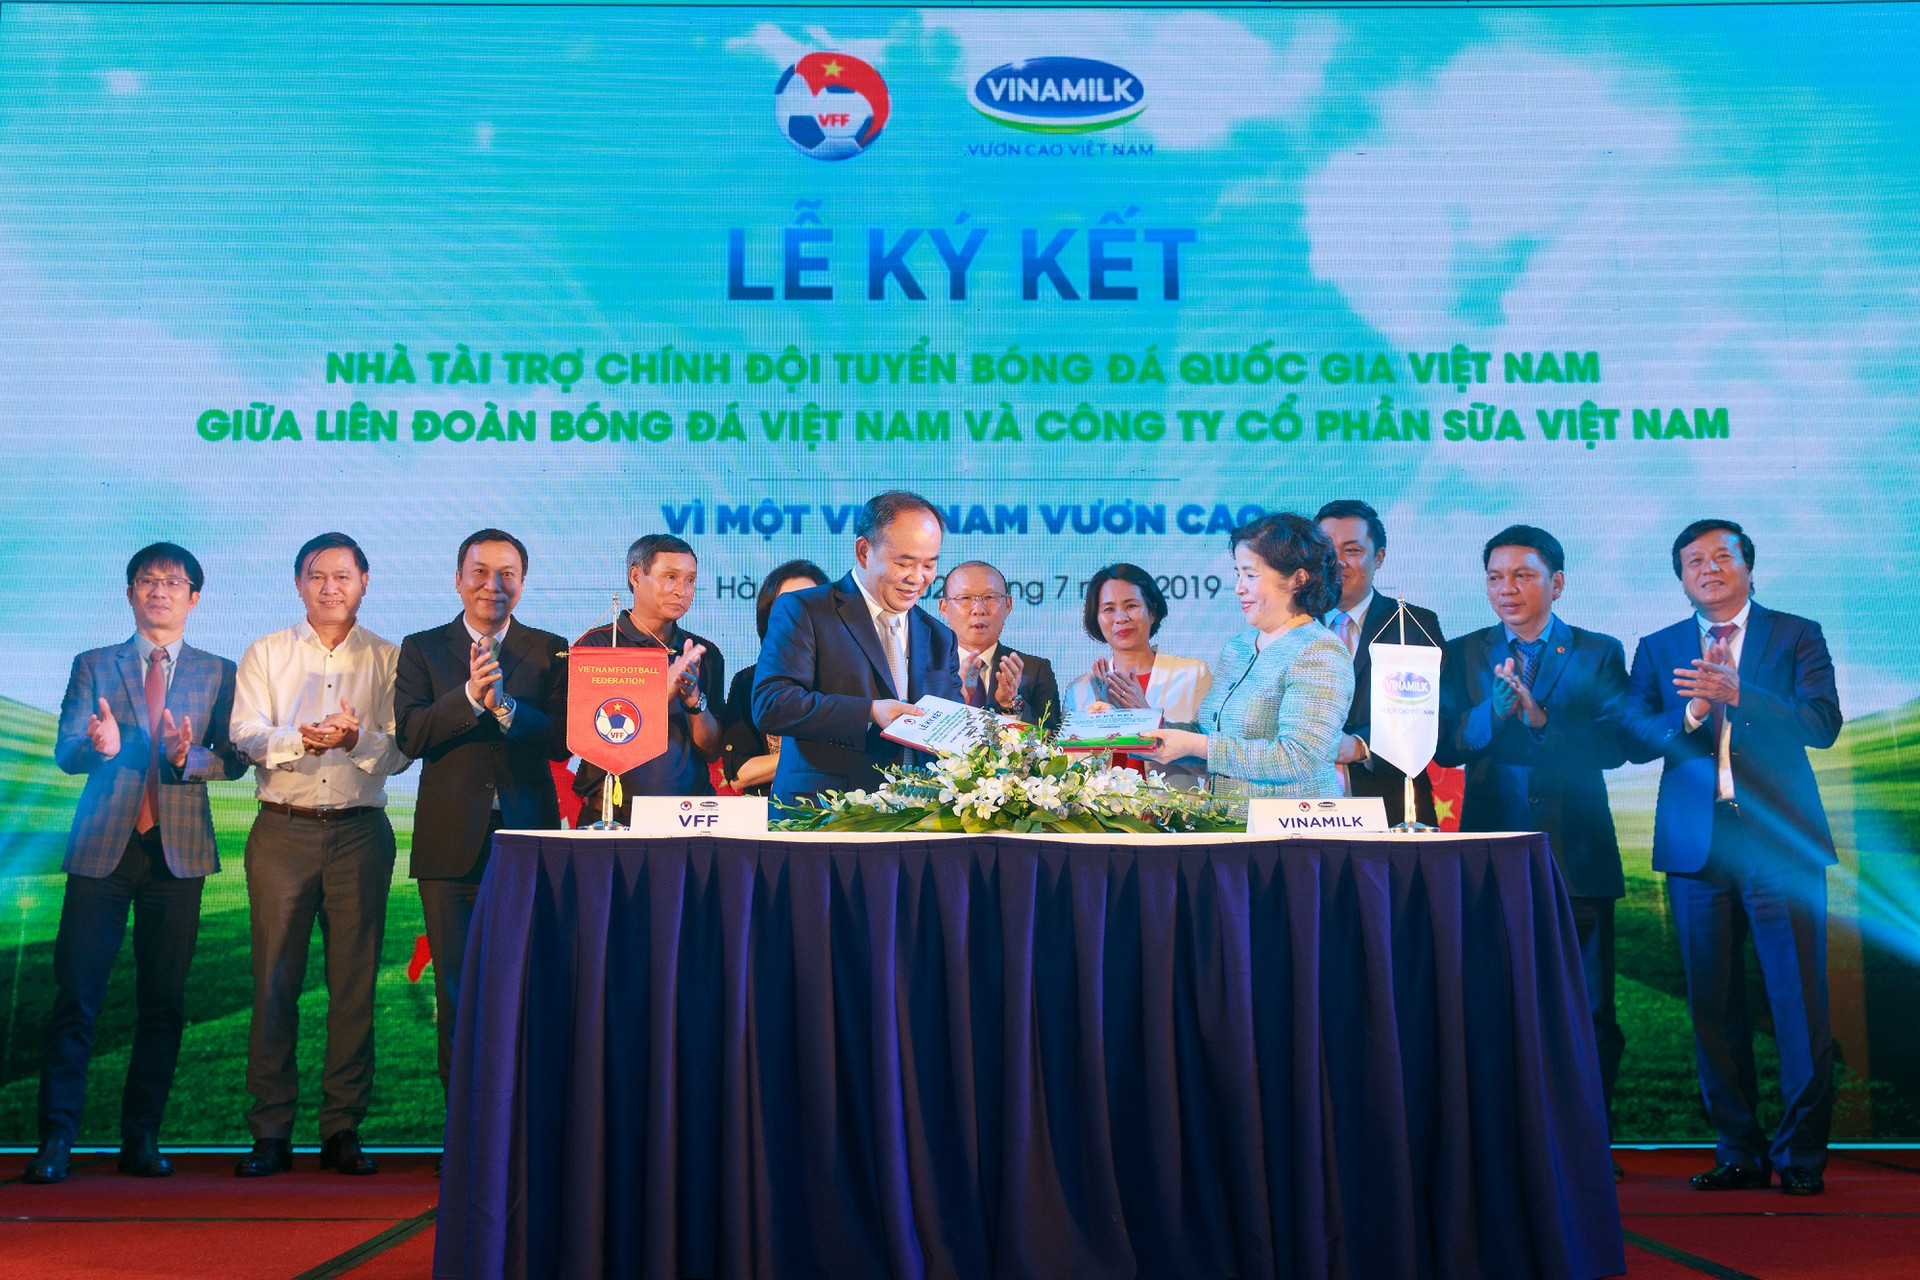 Vinamilk tài trợ chính cho các đội tuyển bóng đá Quốc gia vì một Việt Nam vươn cao.